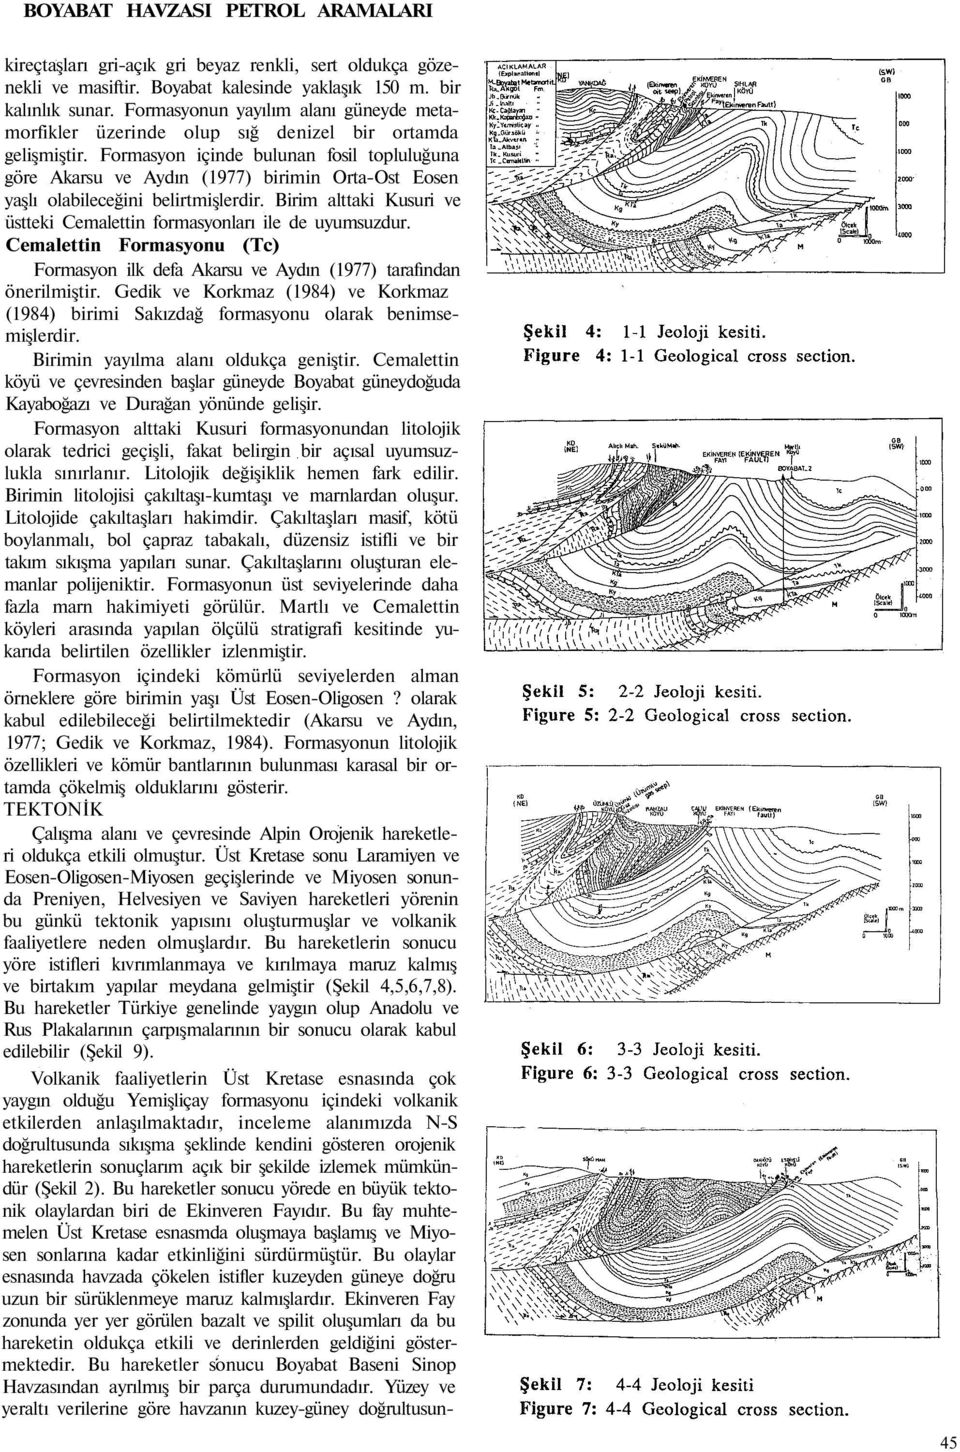 Formasyon içinde bulunan fosil topluluğuna göre Akarsu ve Aydın (1977) birimin Orta-Ost Eosen yaşlı olabileceğini belirtmişlerdir.